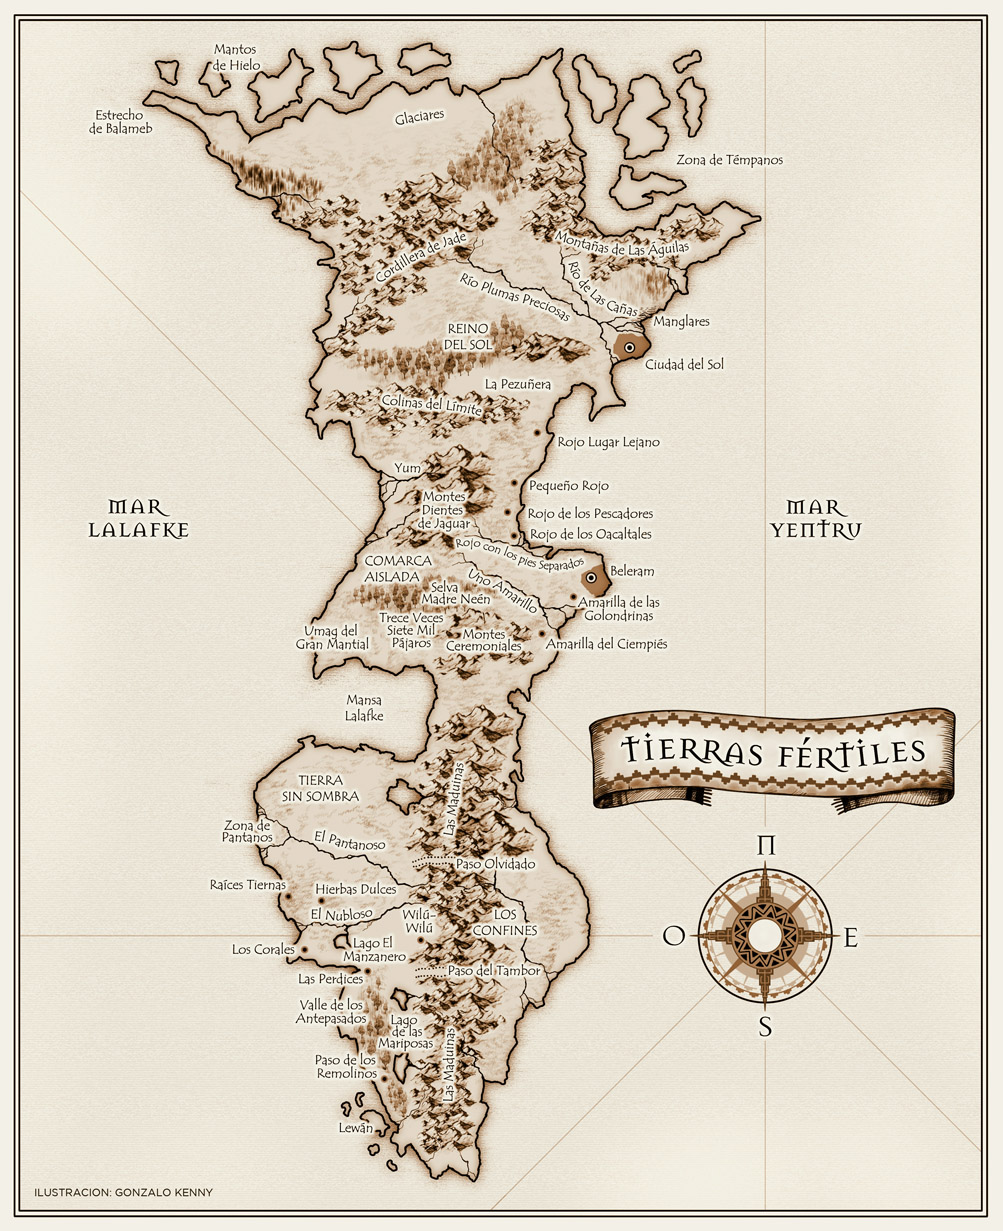 La Saga de Los Confines Mapa_TierrasFertiles_ok_color_mediano